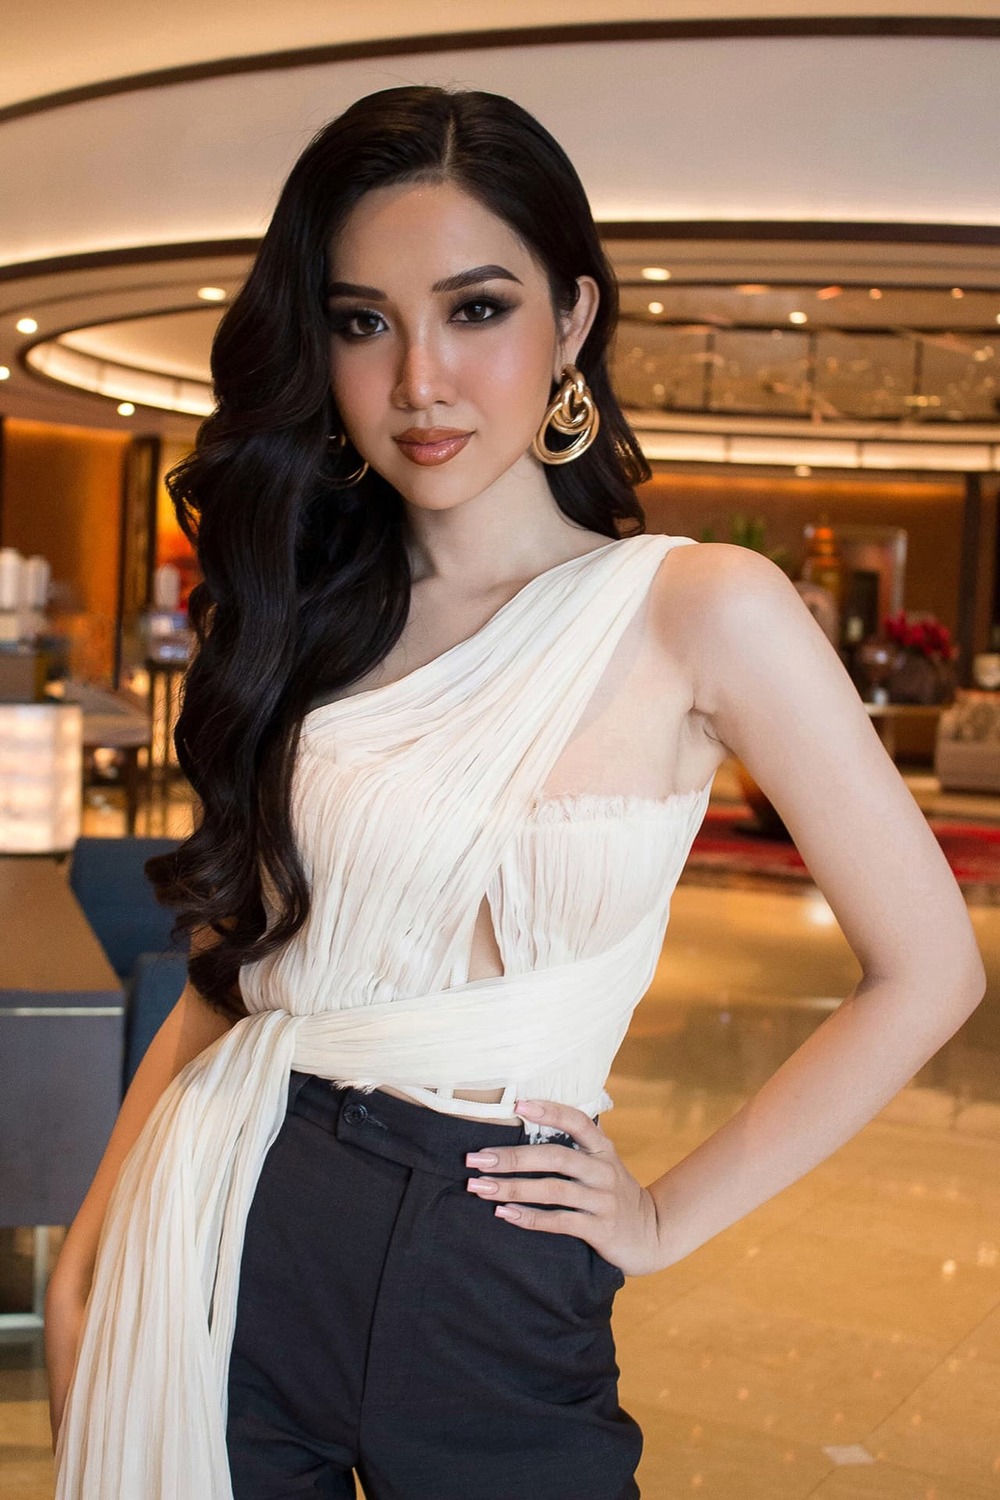 Gác lại vương miện, Đỗ Nhật Hà chính thức dự thi Hoa hậu Hoàn vũ Việt Nam - Ảnh 2